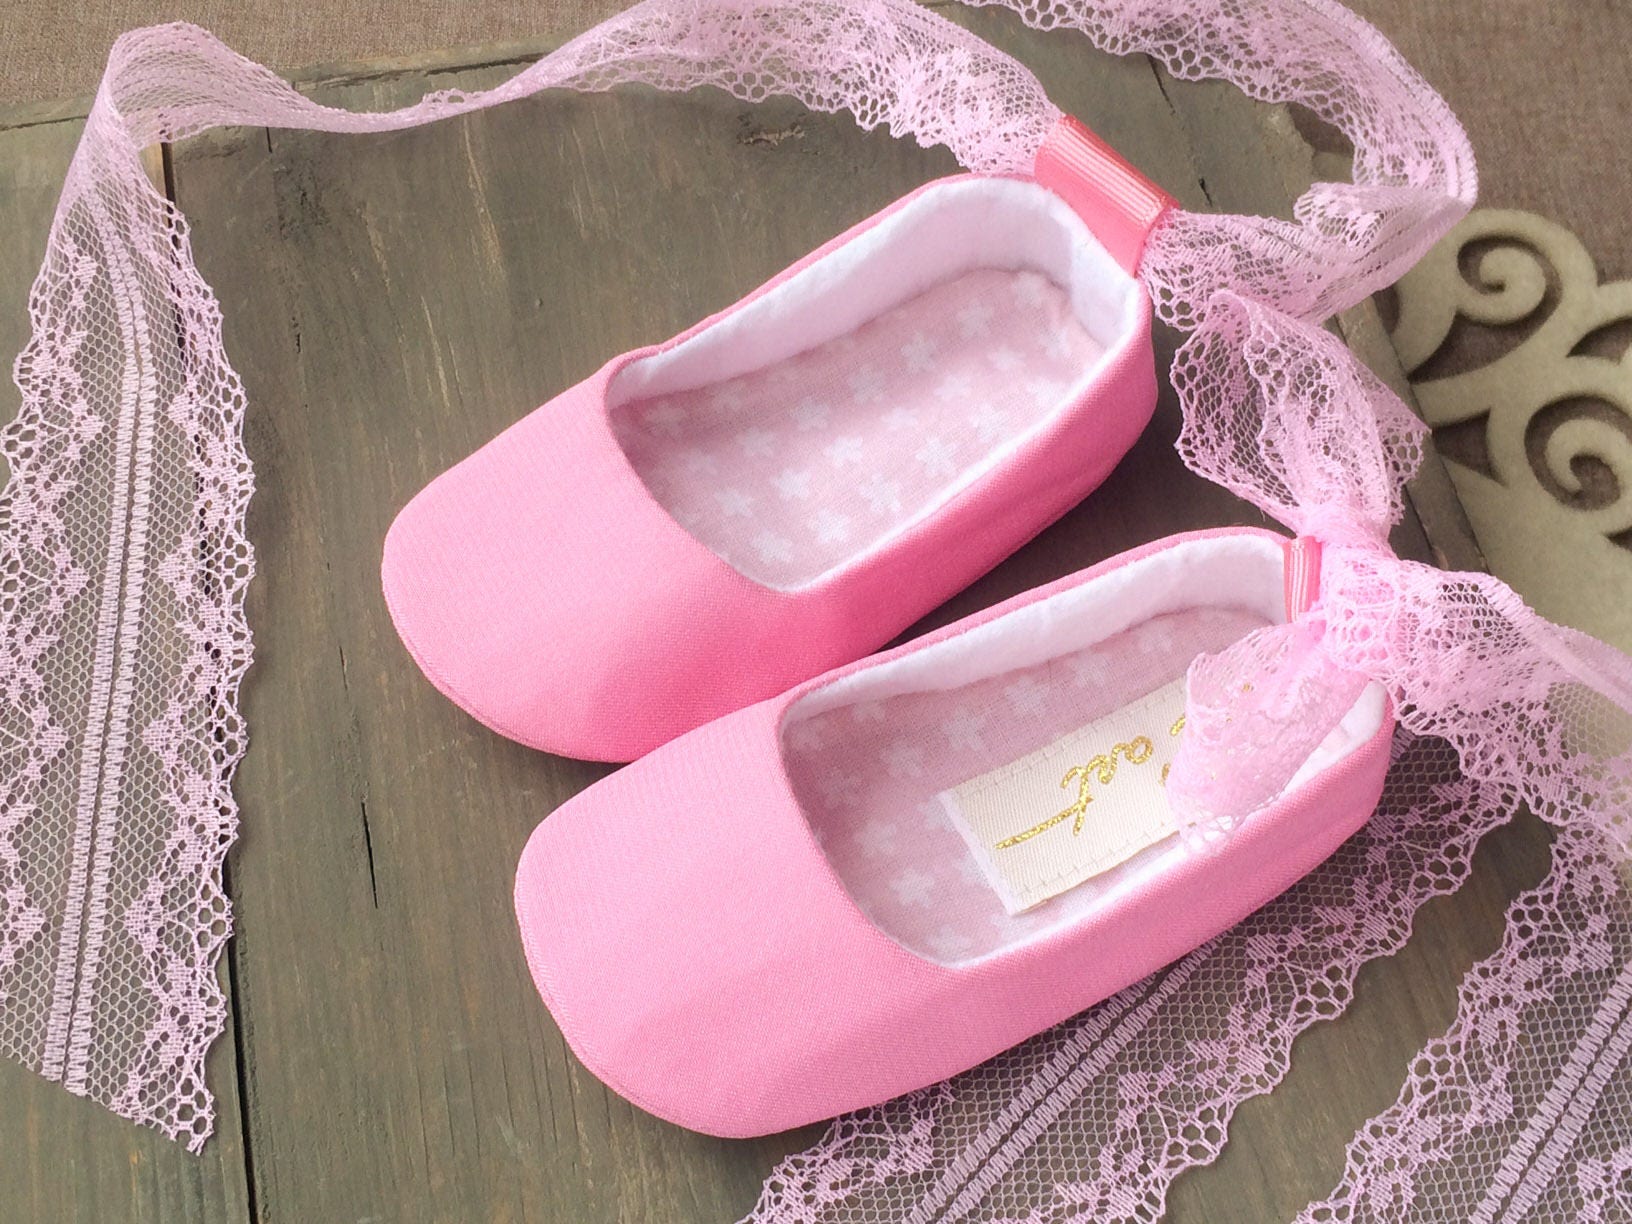 WITTE veterbind ballerina schoenen witte doop slippers doopschoenen roze ballerina flats Schoenen Meisjesschoenen Mary Janes pasgeboren foto prop bloem meisje schoen 